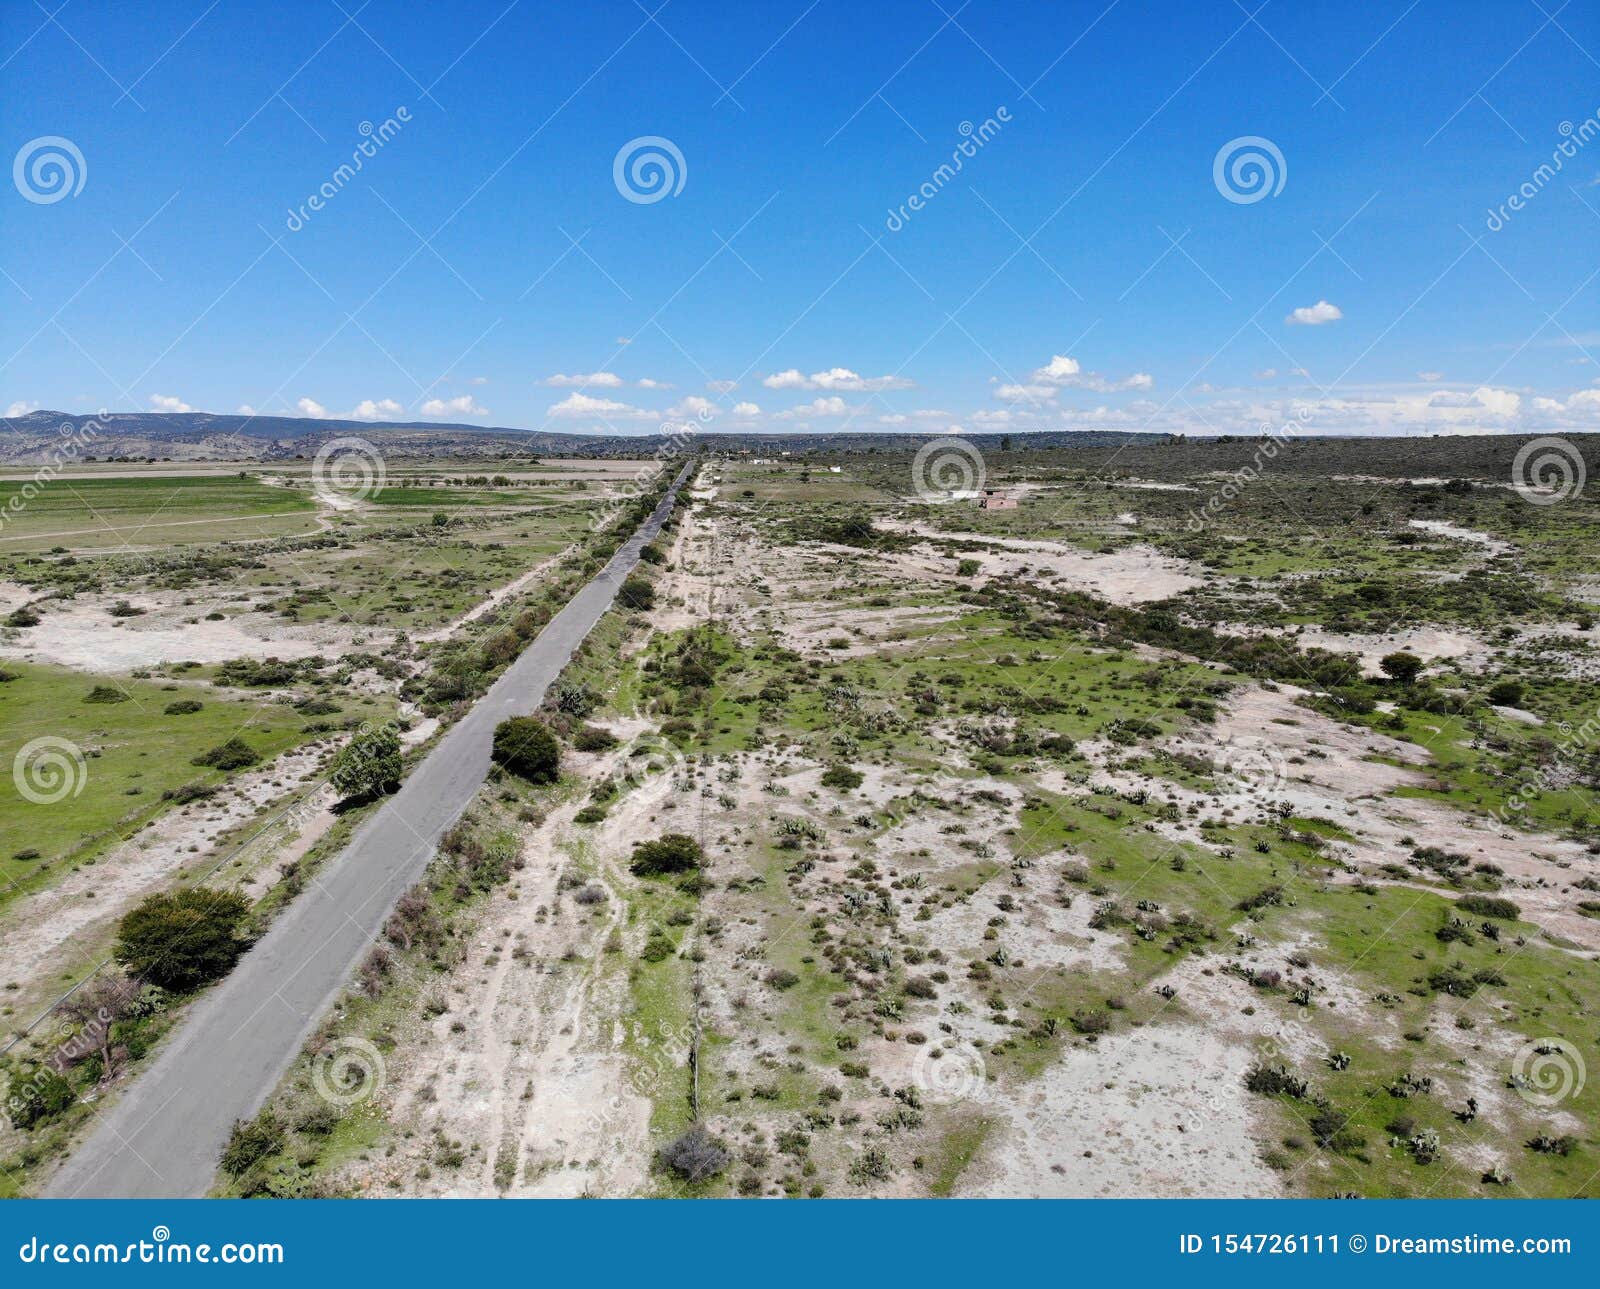 highway towards coporo, guanajuato, mexico